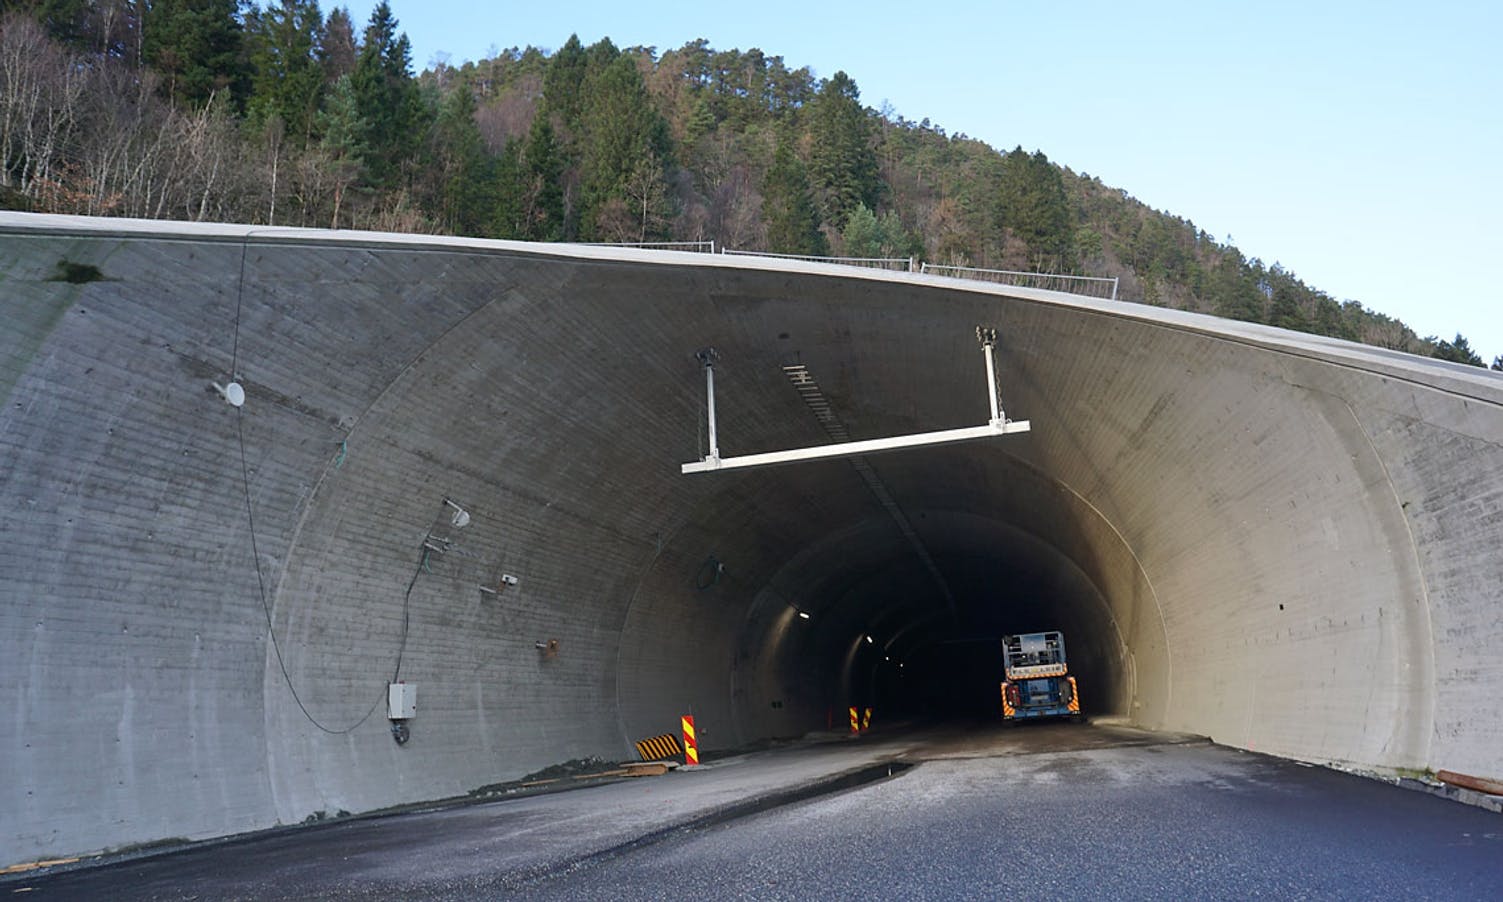 Det eine løpet er stengt for å gje Thunestvedt og ABB trygge arbeisforhold. (Foto: KVB)